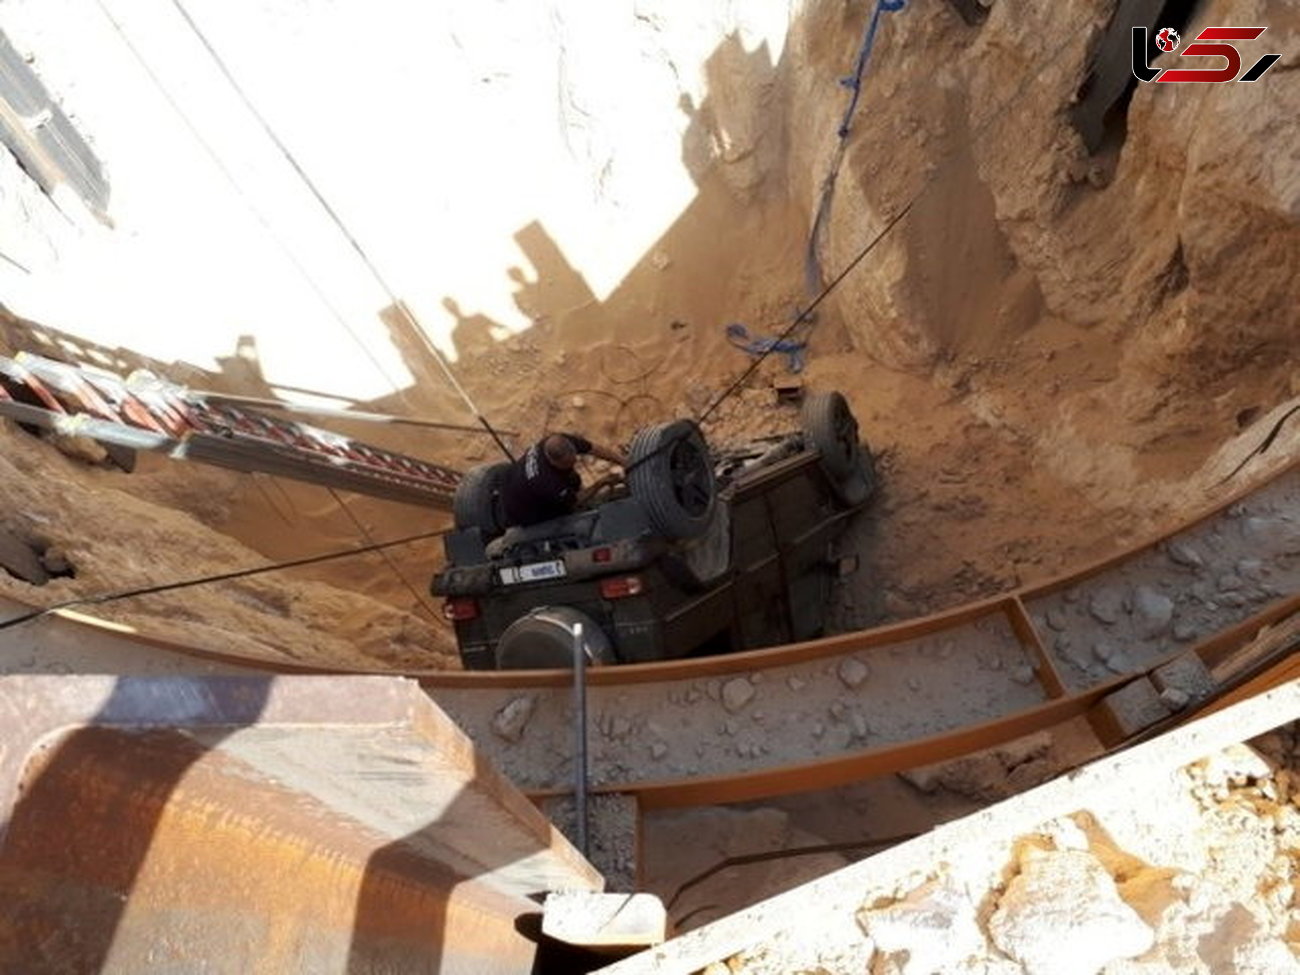 سقوط مرسدس بنز کلاس جی به حفره 15 متری / بالاترین مقام به دیدن راننده رفت + عکس 